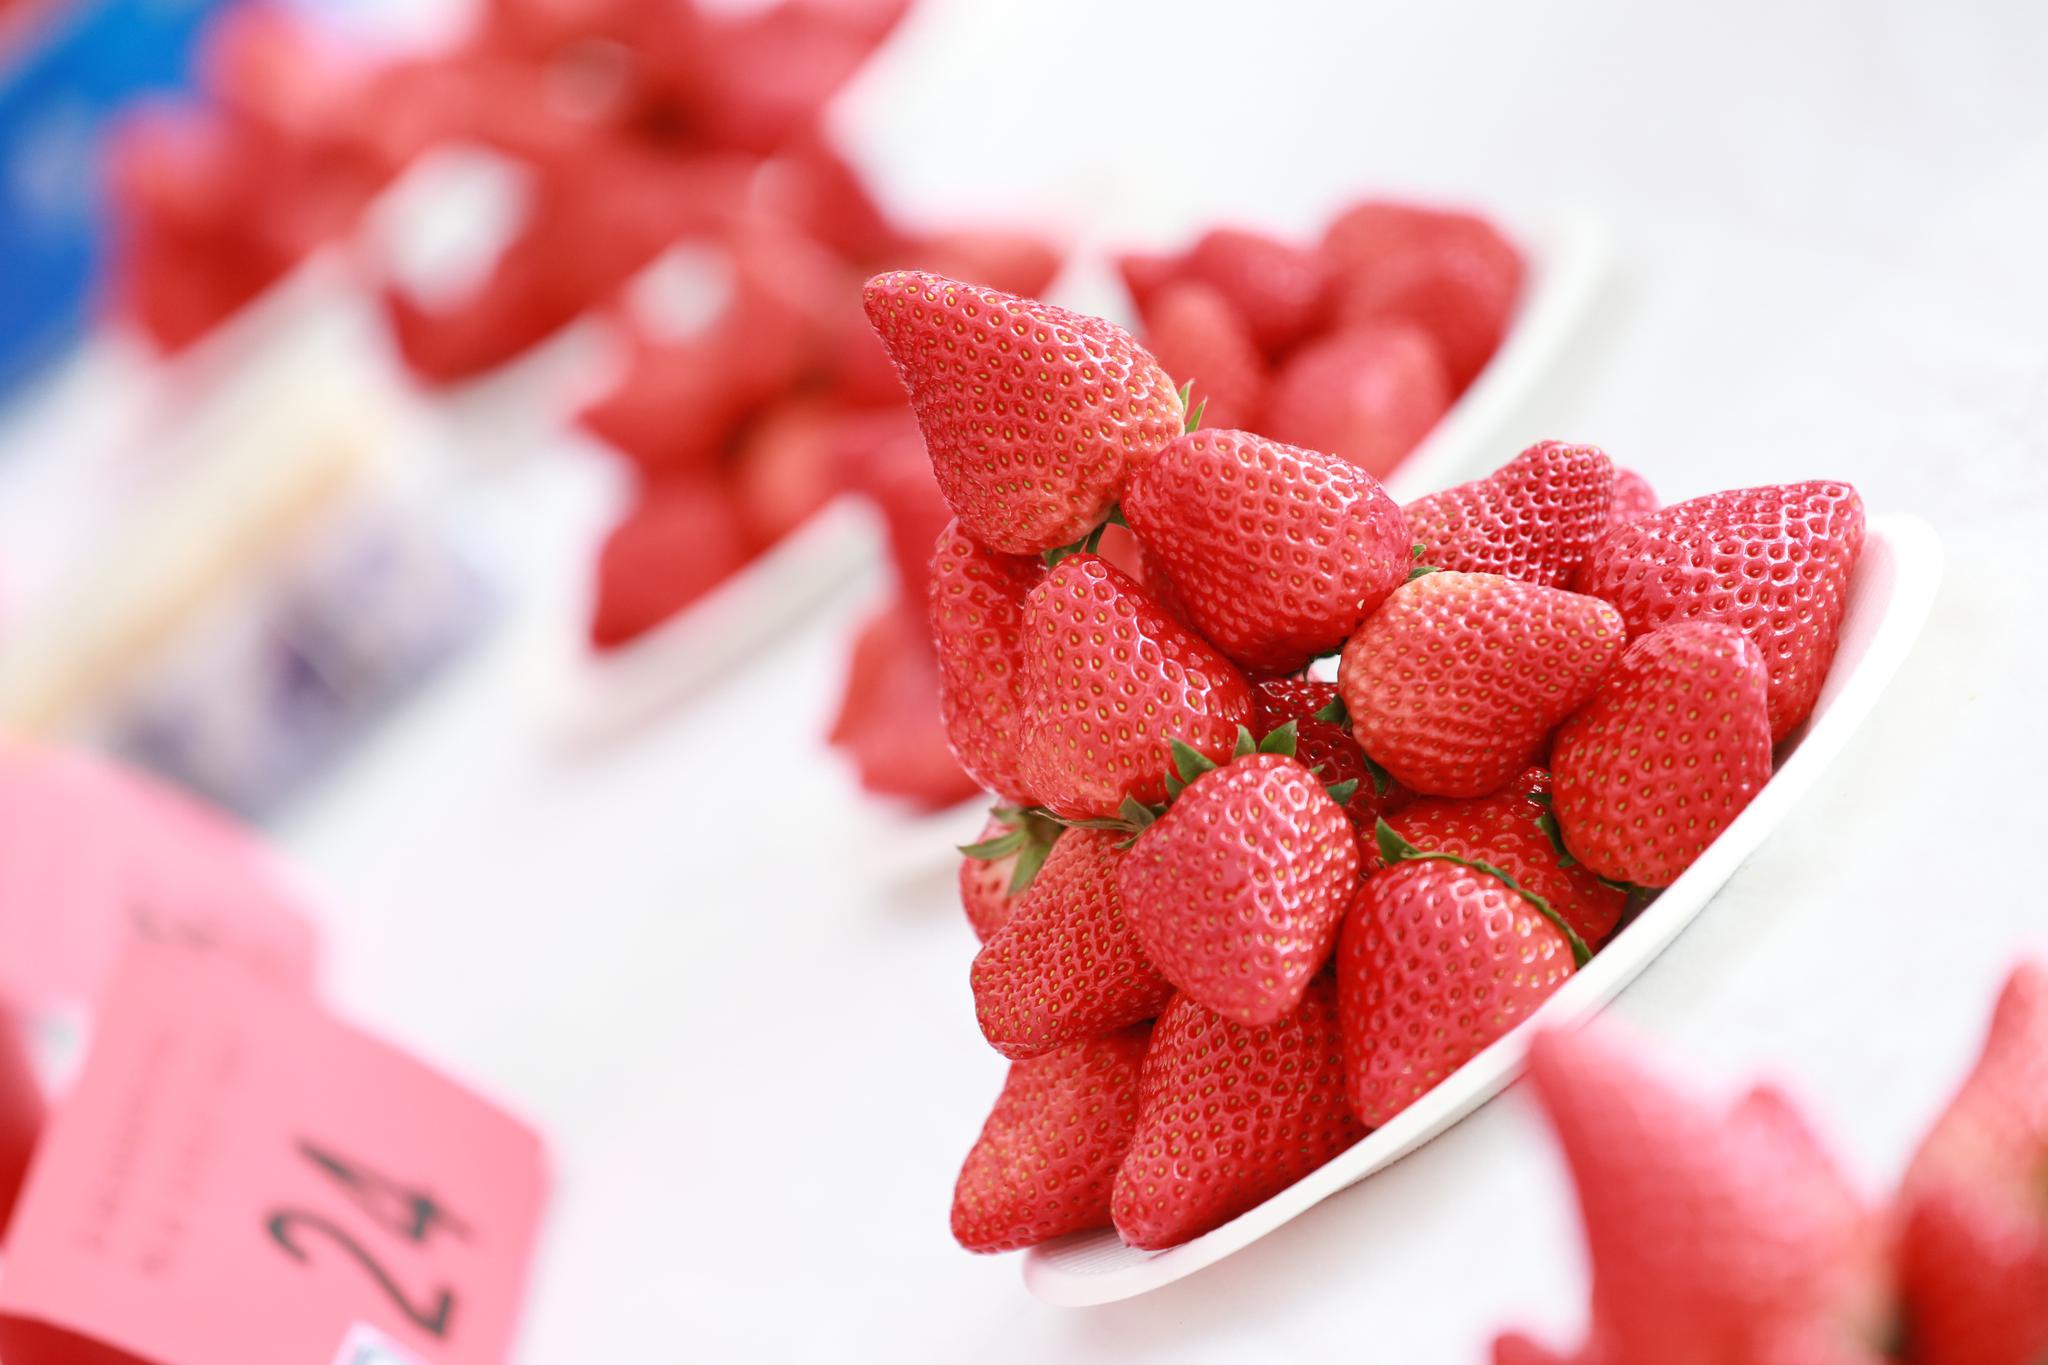 第七届“北京草莓之星”评选暨第二届昌平草莓节活动在昌平举办 京郊优质草莓迎采收旺季-华商经济网